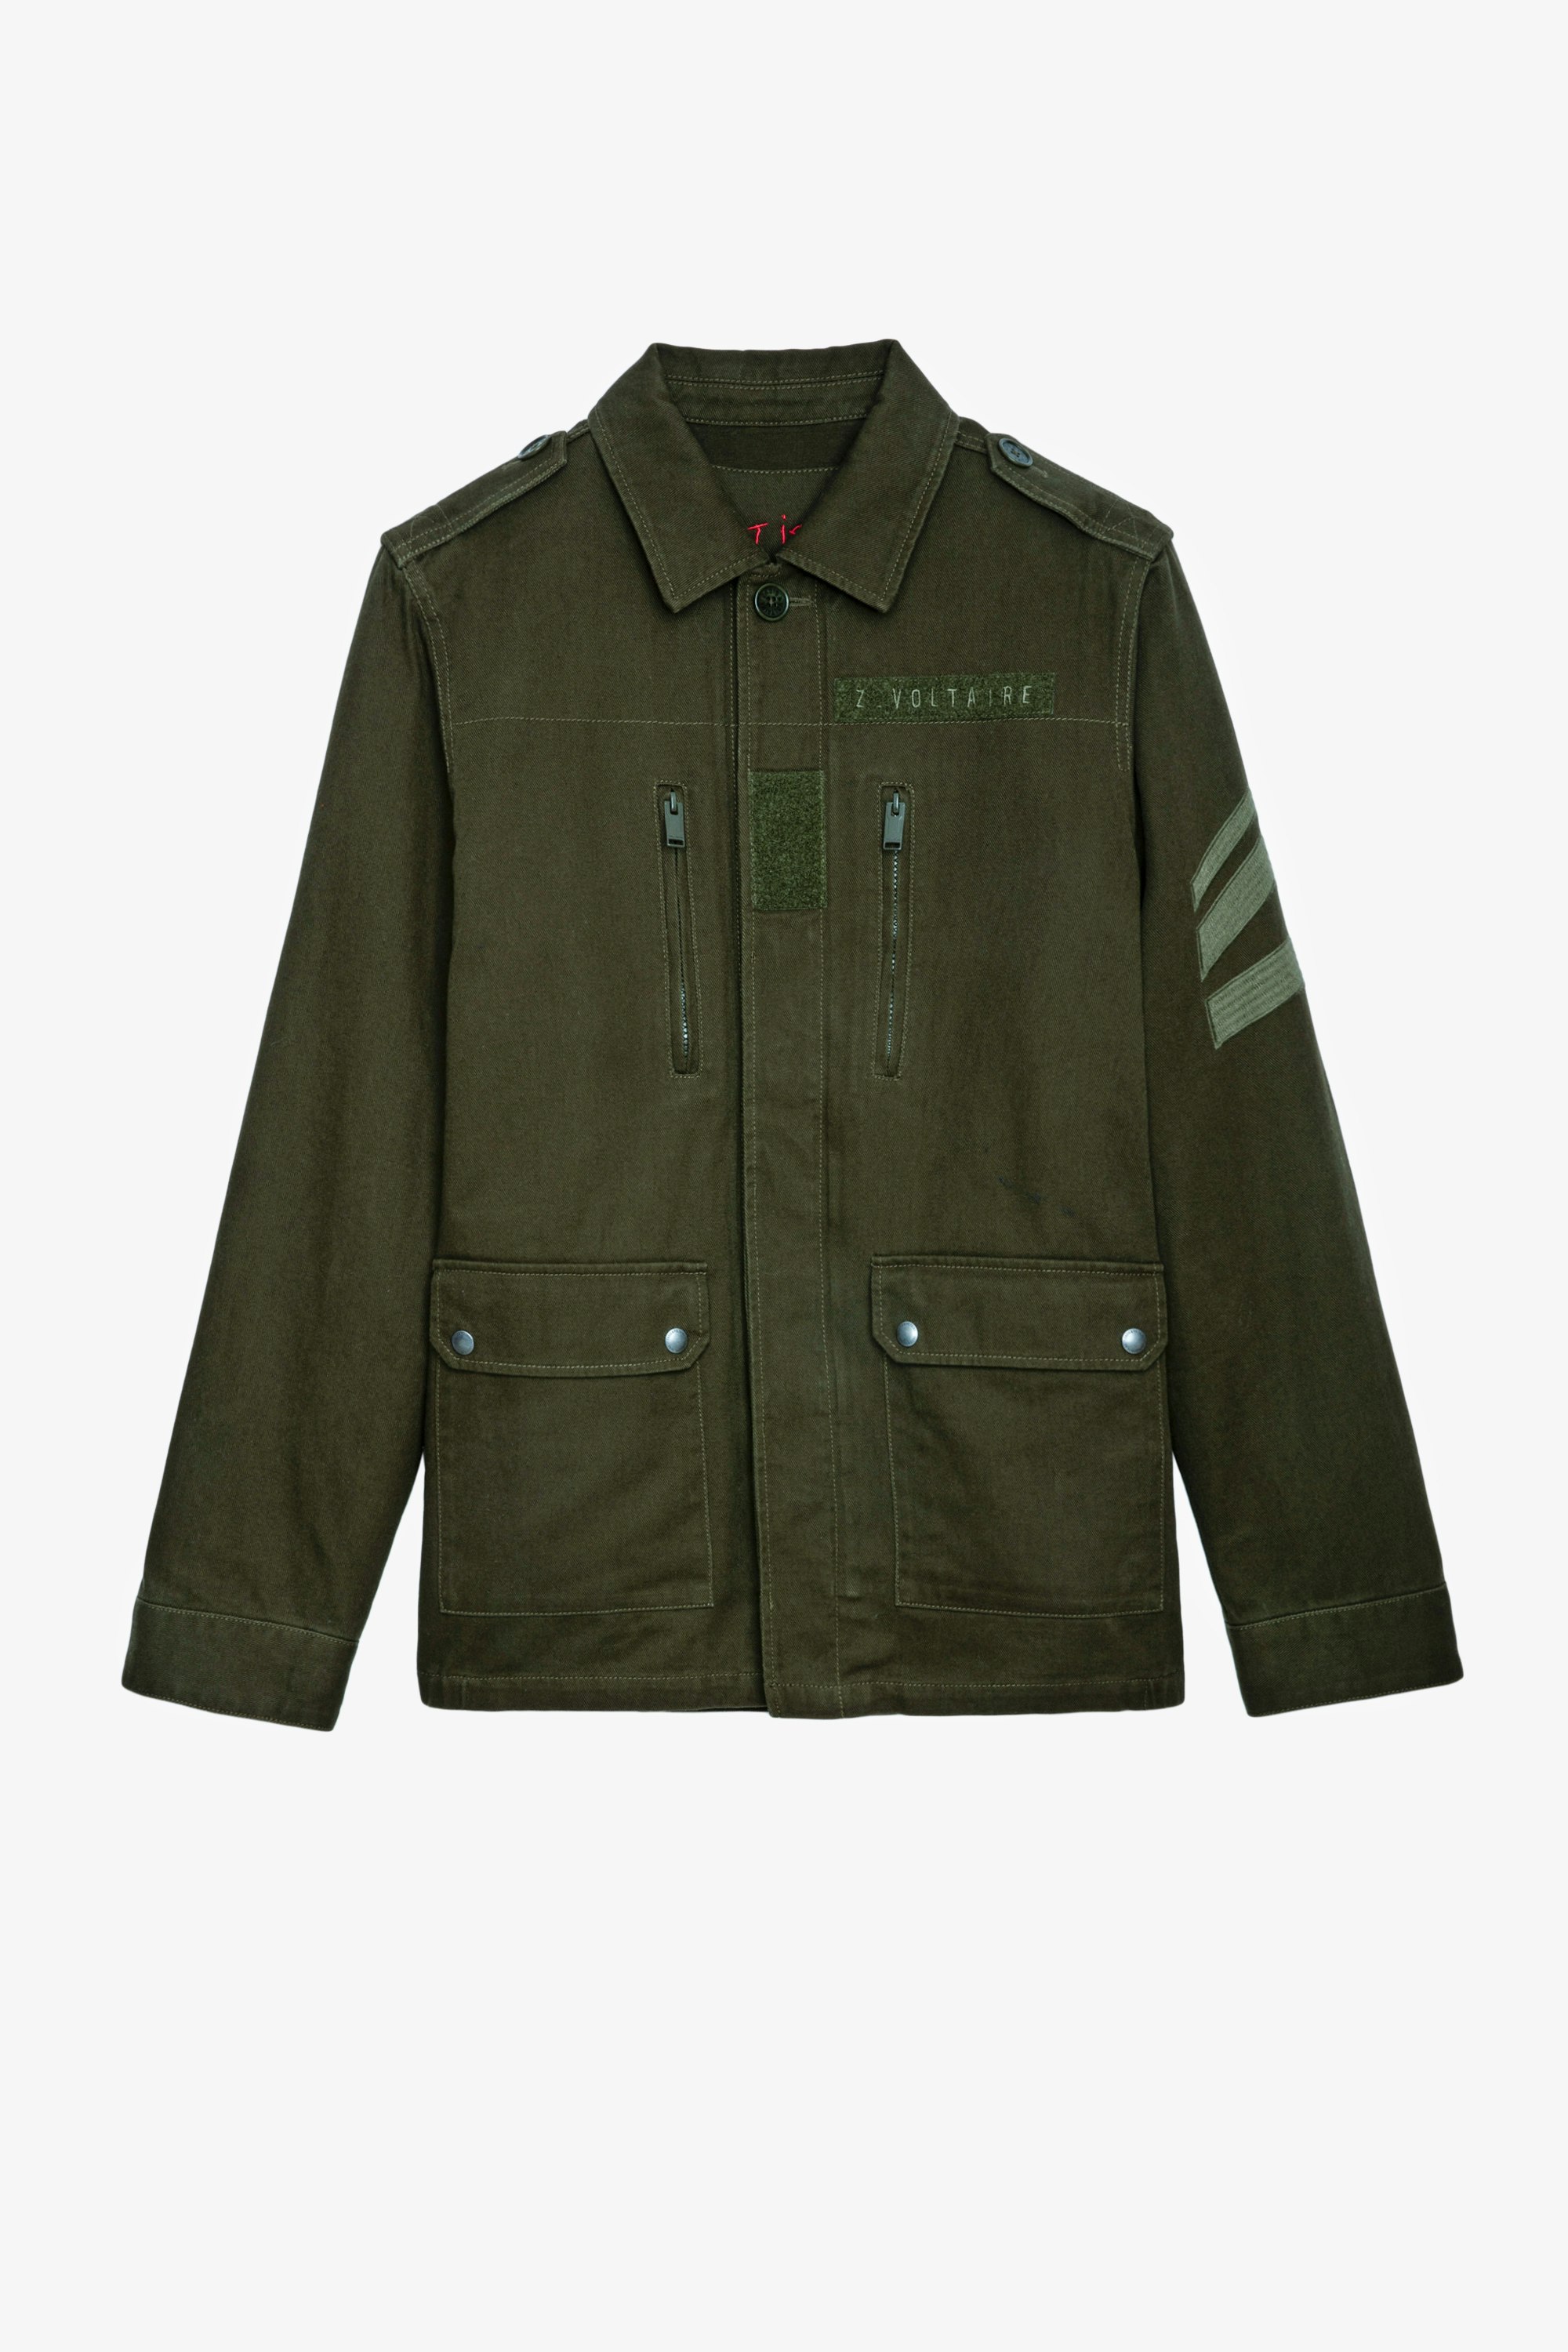 Kido Amo Heavy Arrow Jacket Men's khaki cotton military jacket 